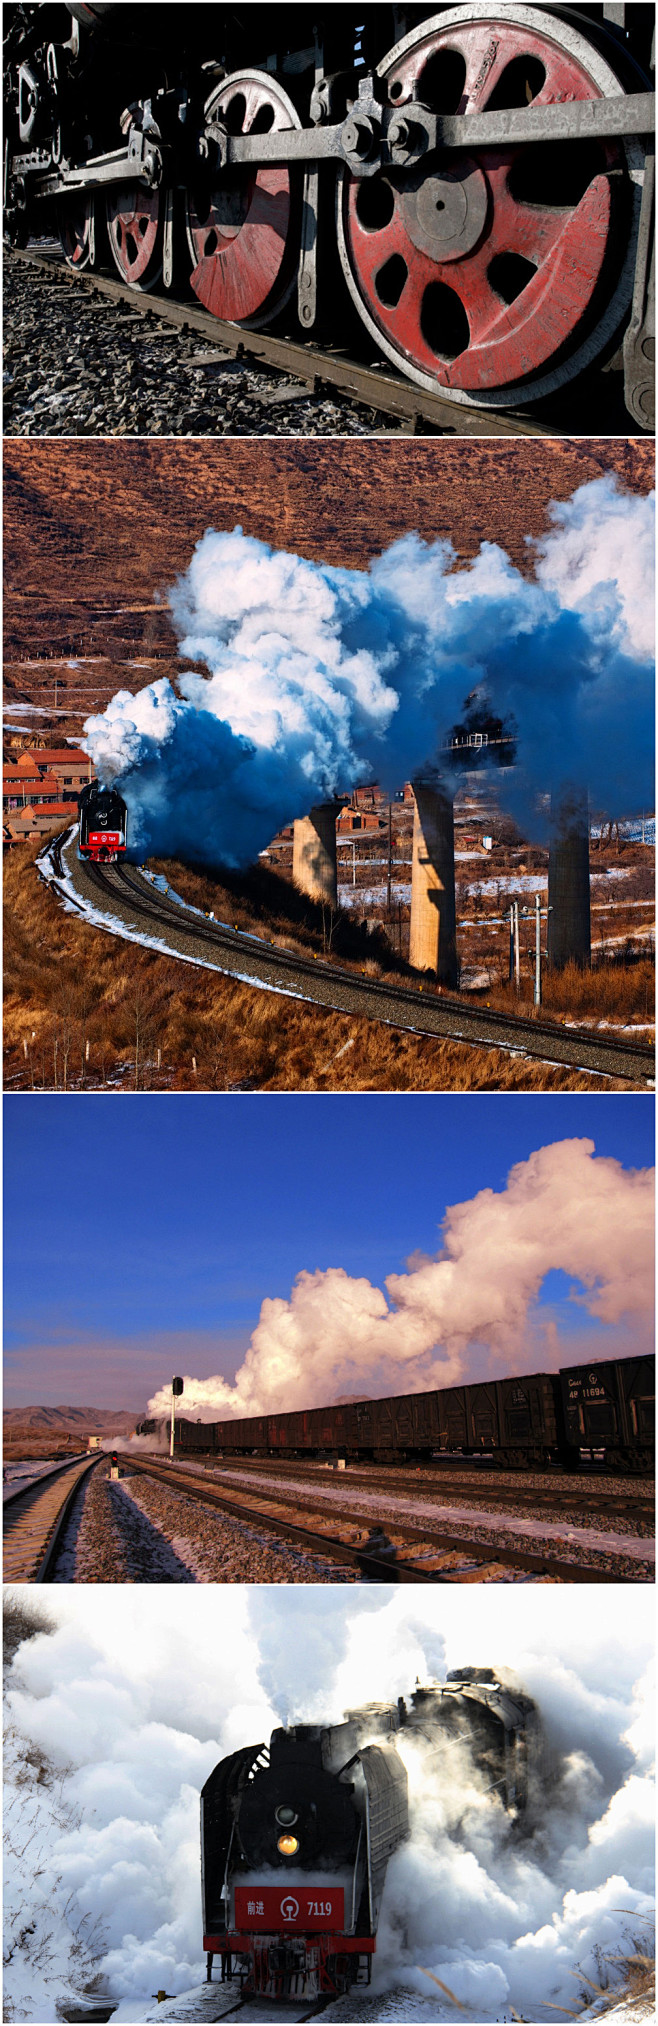 到到网蒸汽火车喷云吐雾、穿山而过，是曾经...